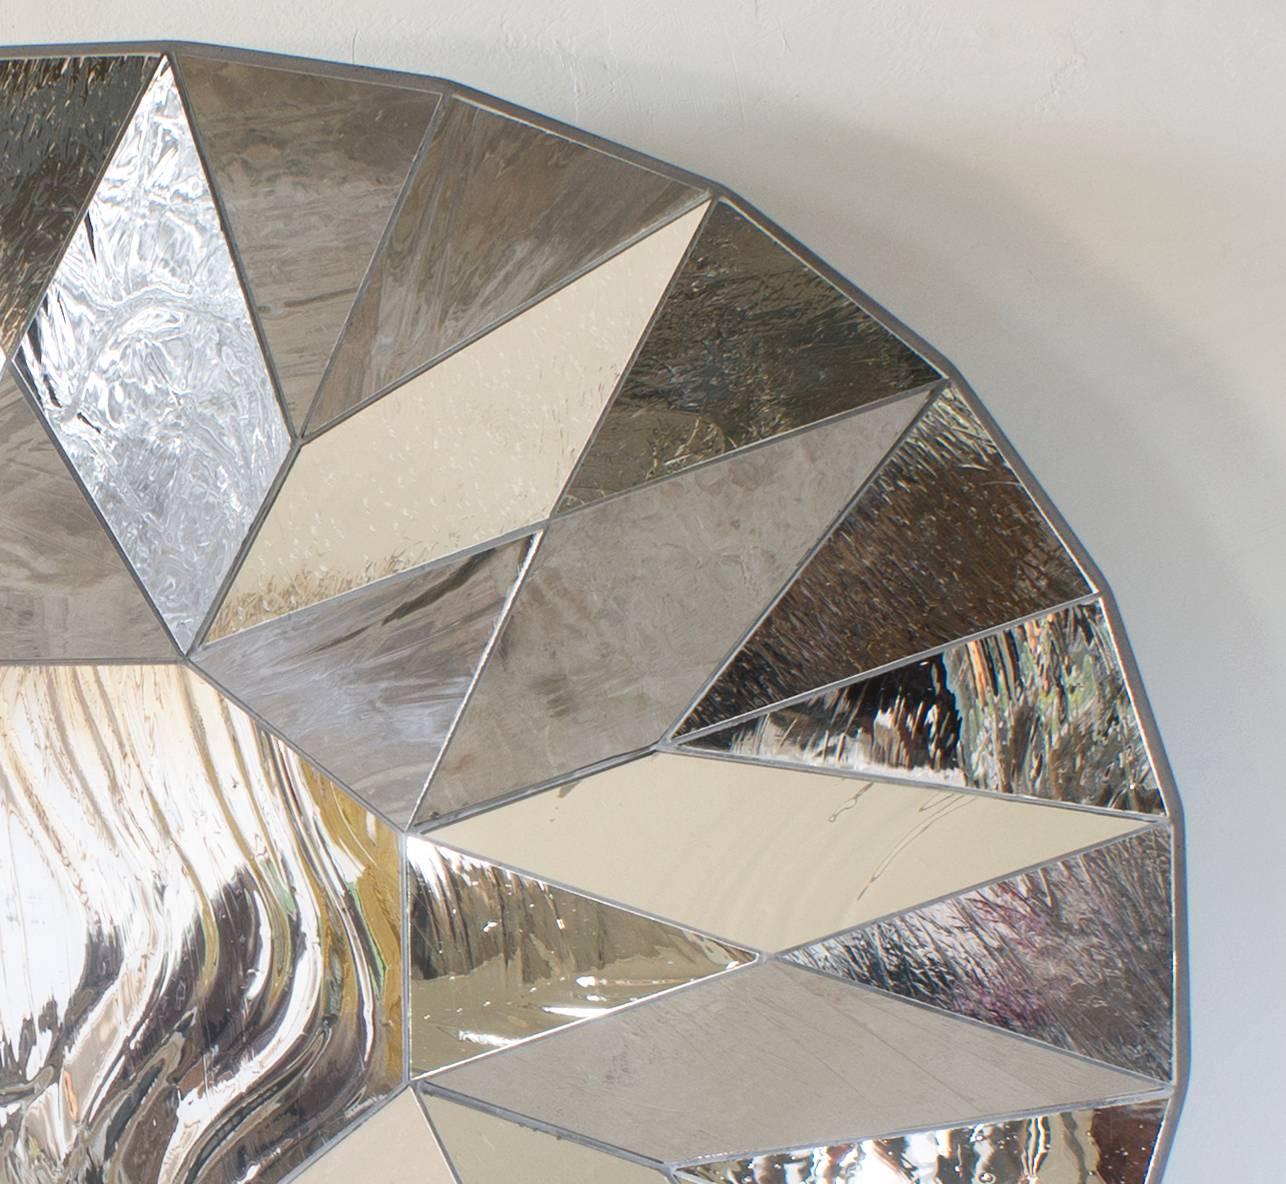 Striated silver mirror by Sam Orlando Miller.